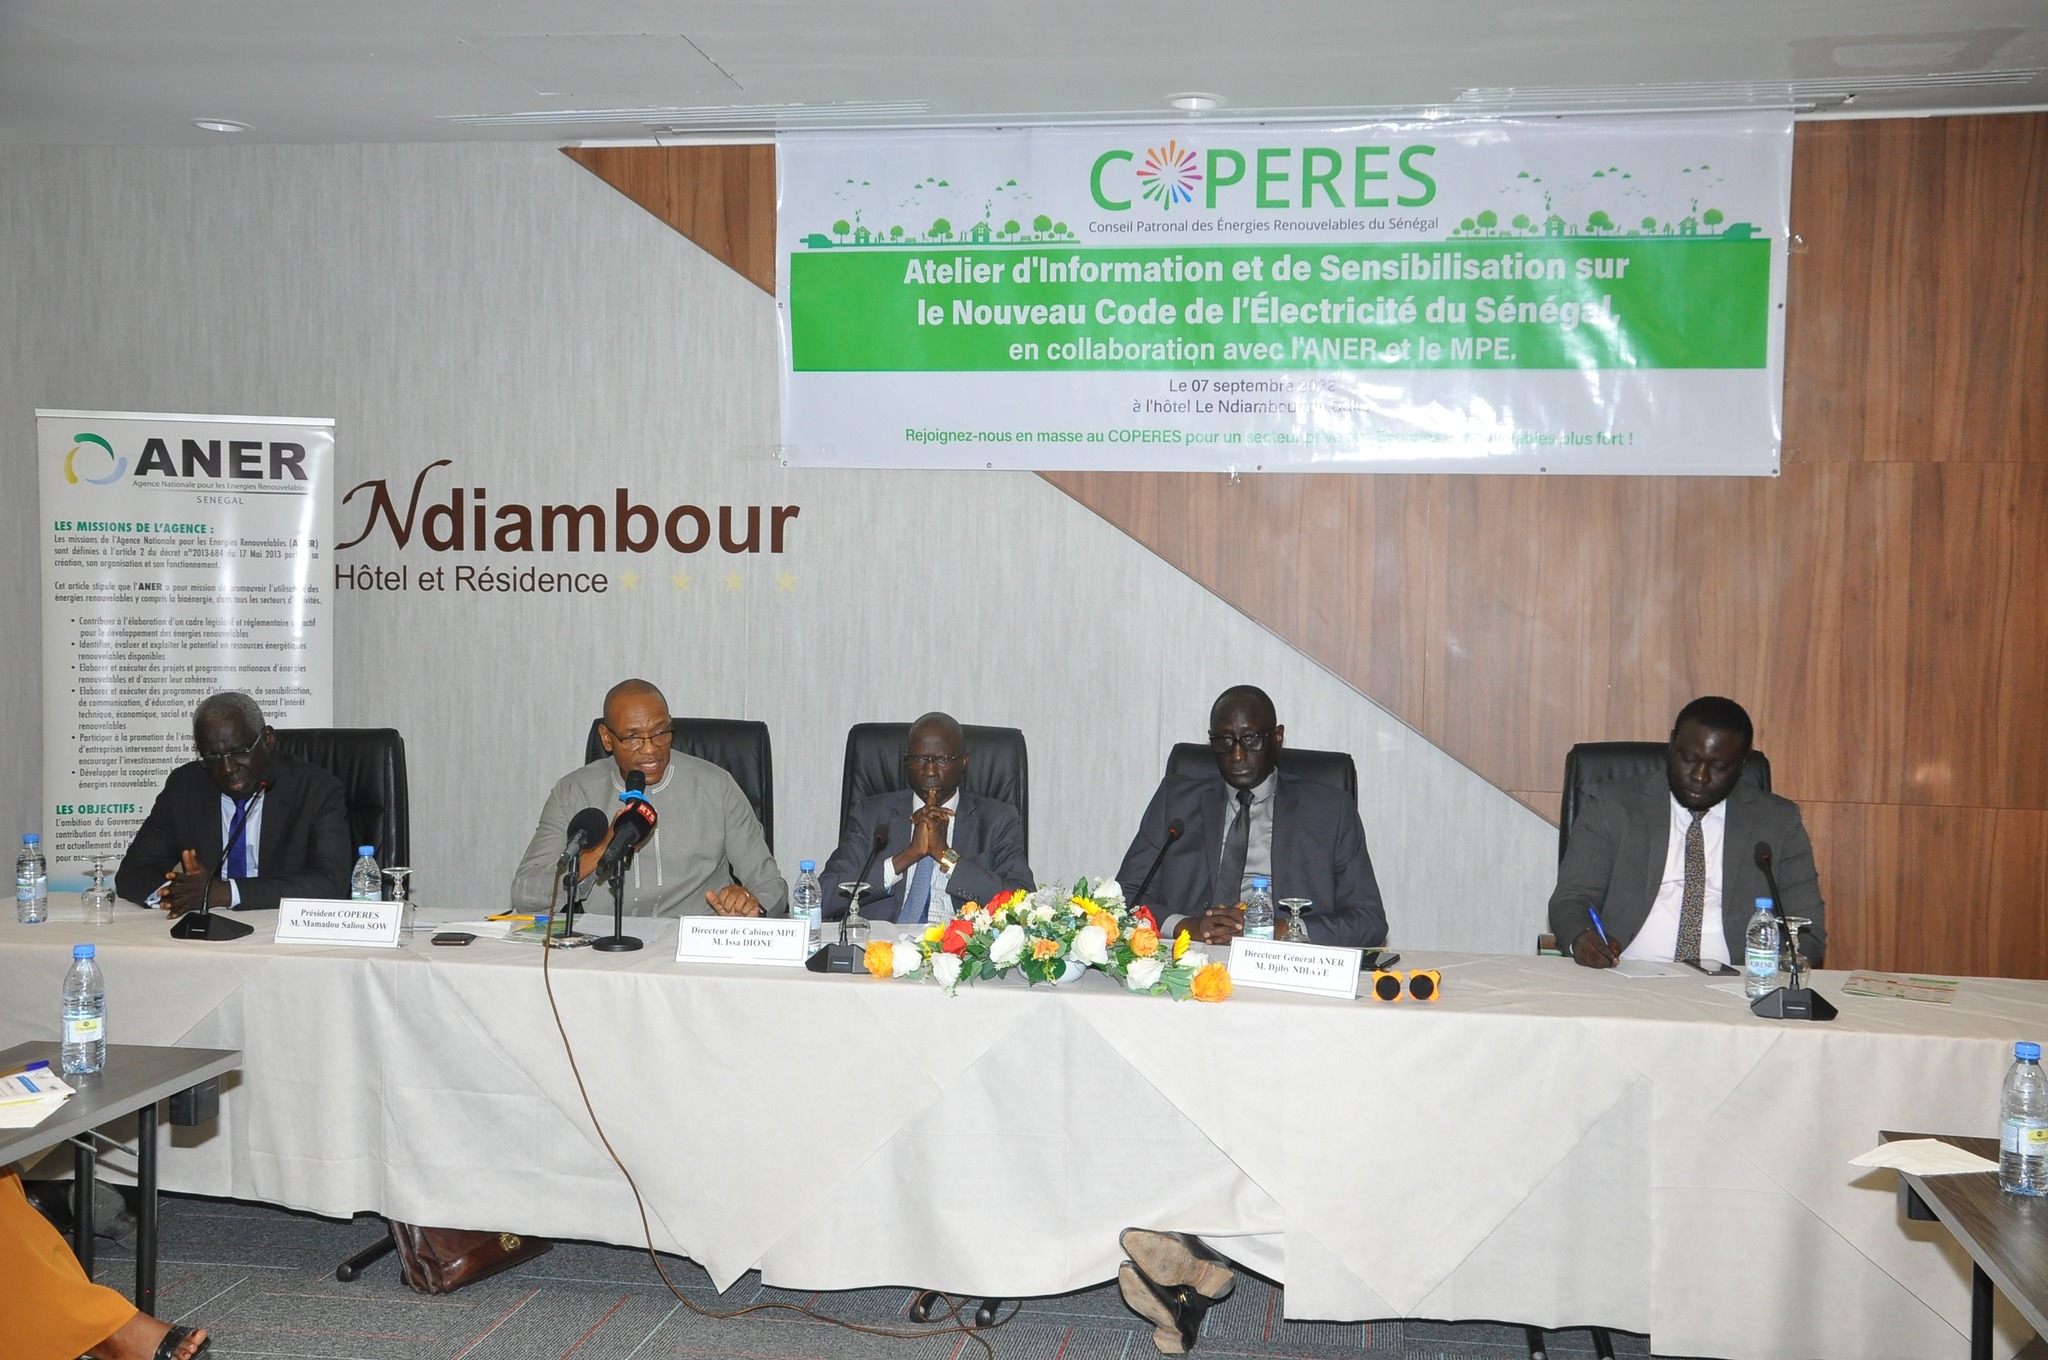 Atelier d'Information et de Sensibilisation sur le Nouveau Code de l'Electricité au Sénégal : COPERES et ANER unissent leurs efforts